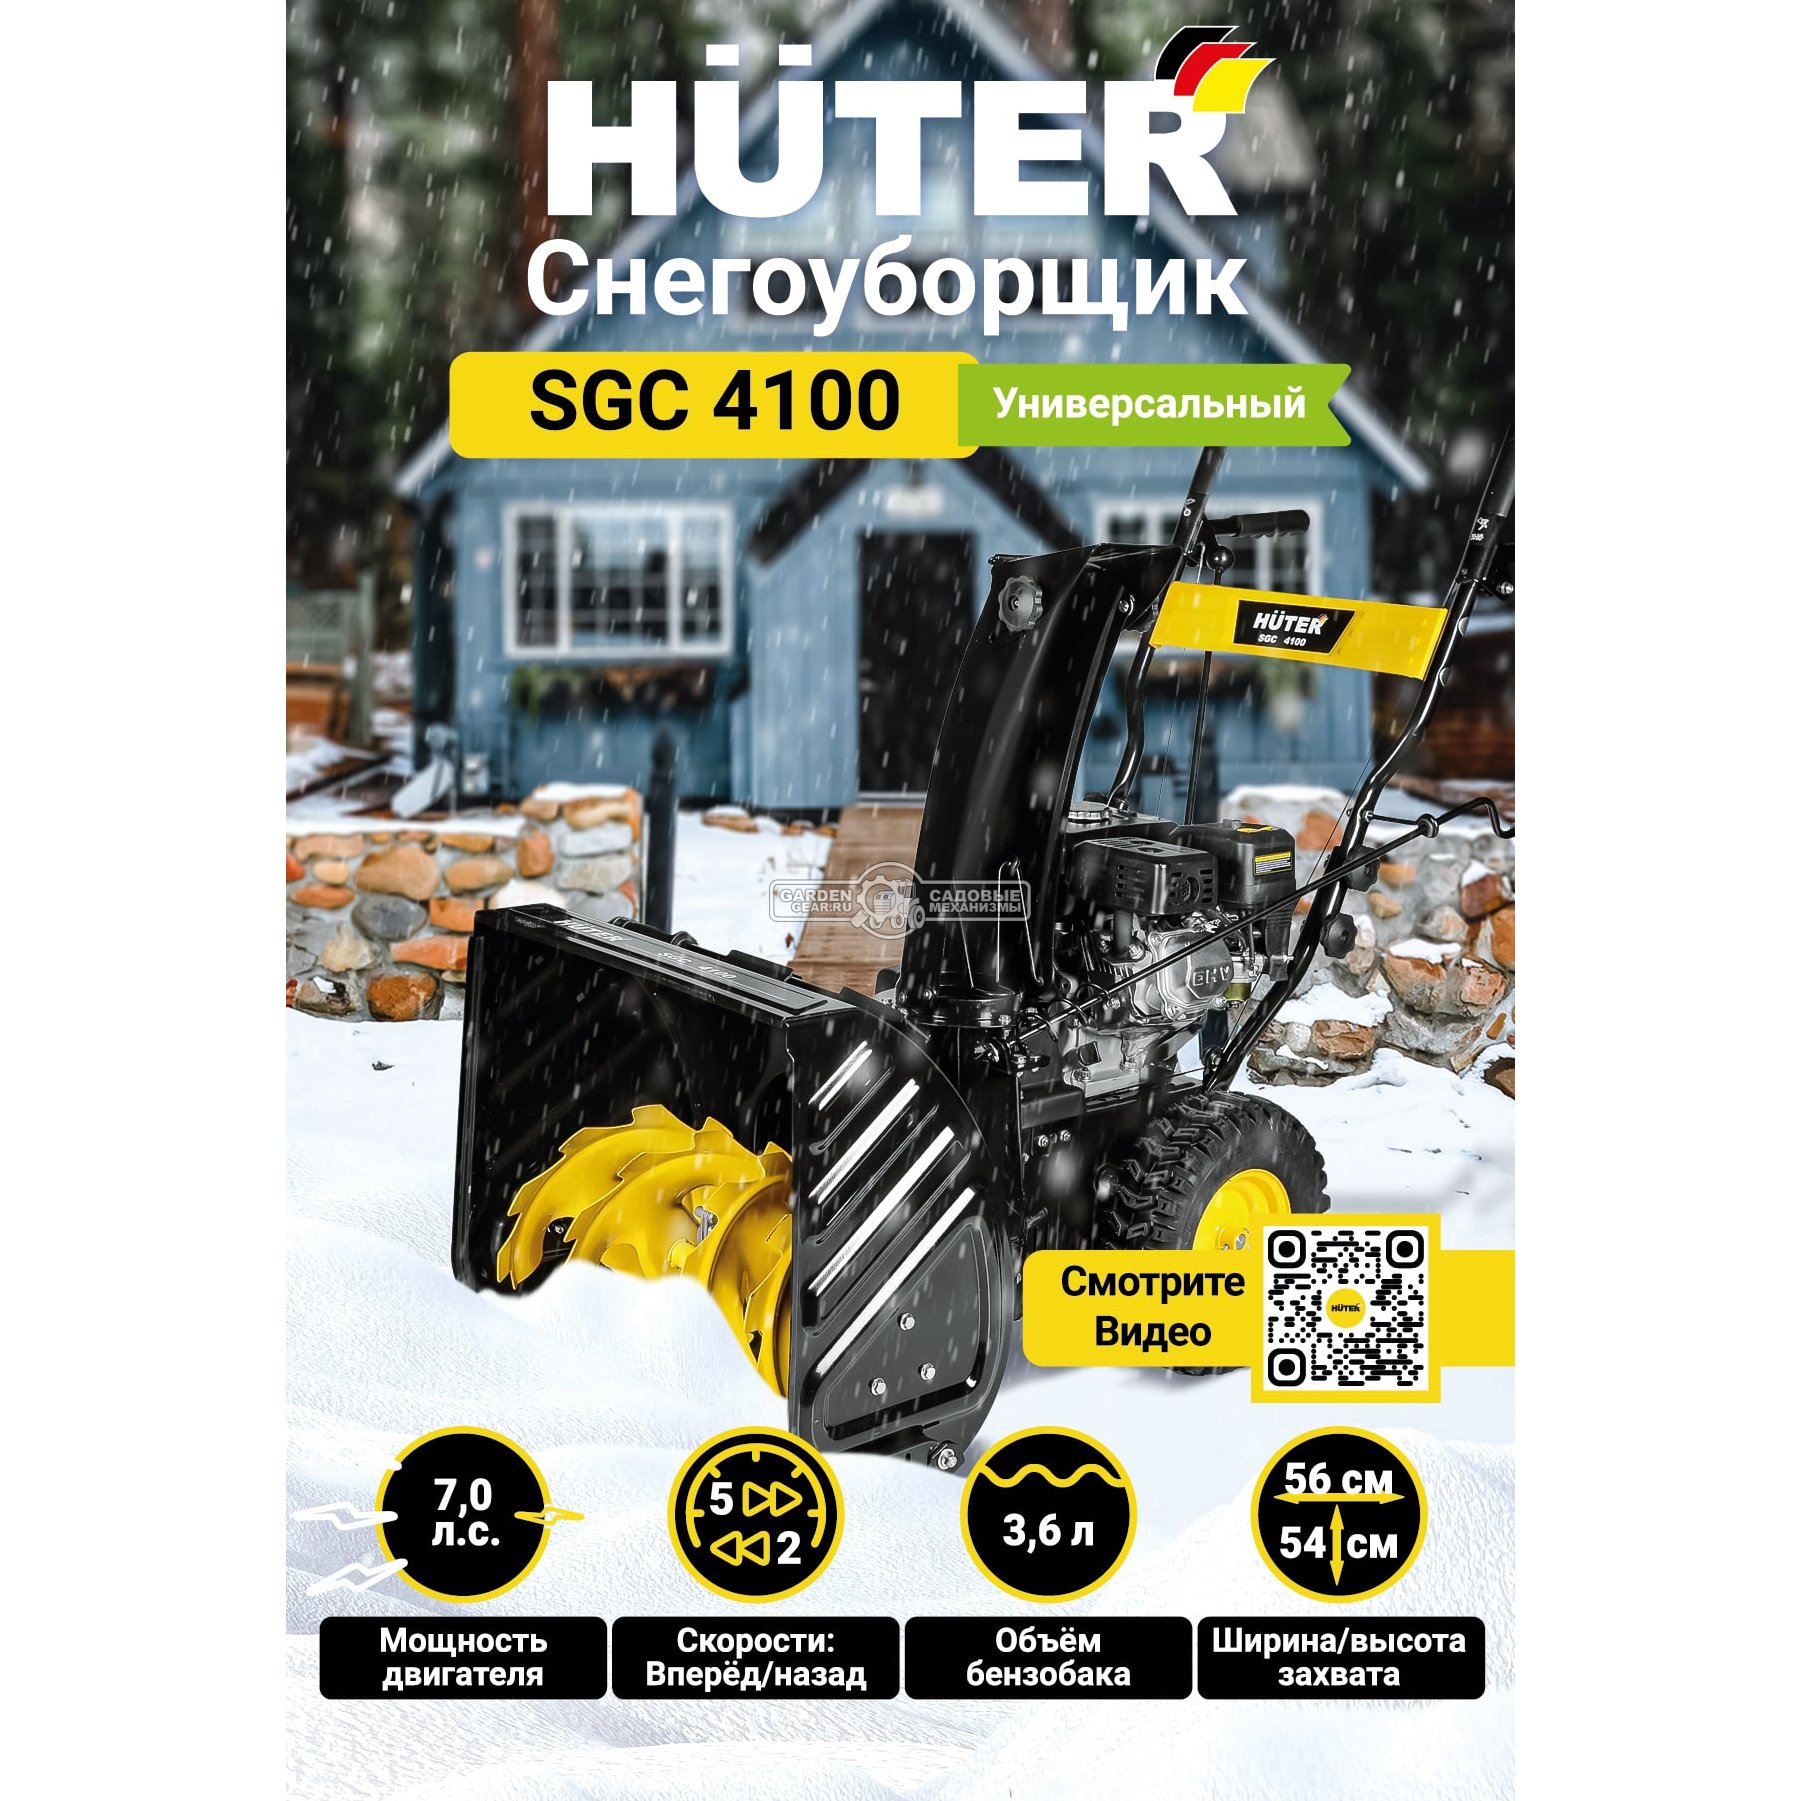 Снегоуборщик Huter SGC 4100 (PRC, 56 см., Huter, 6.5 л.с, скорости 5/2, 71 кг)